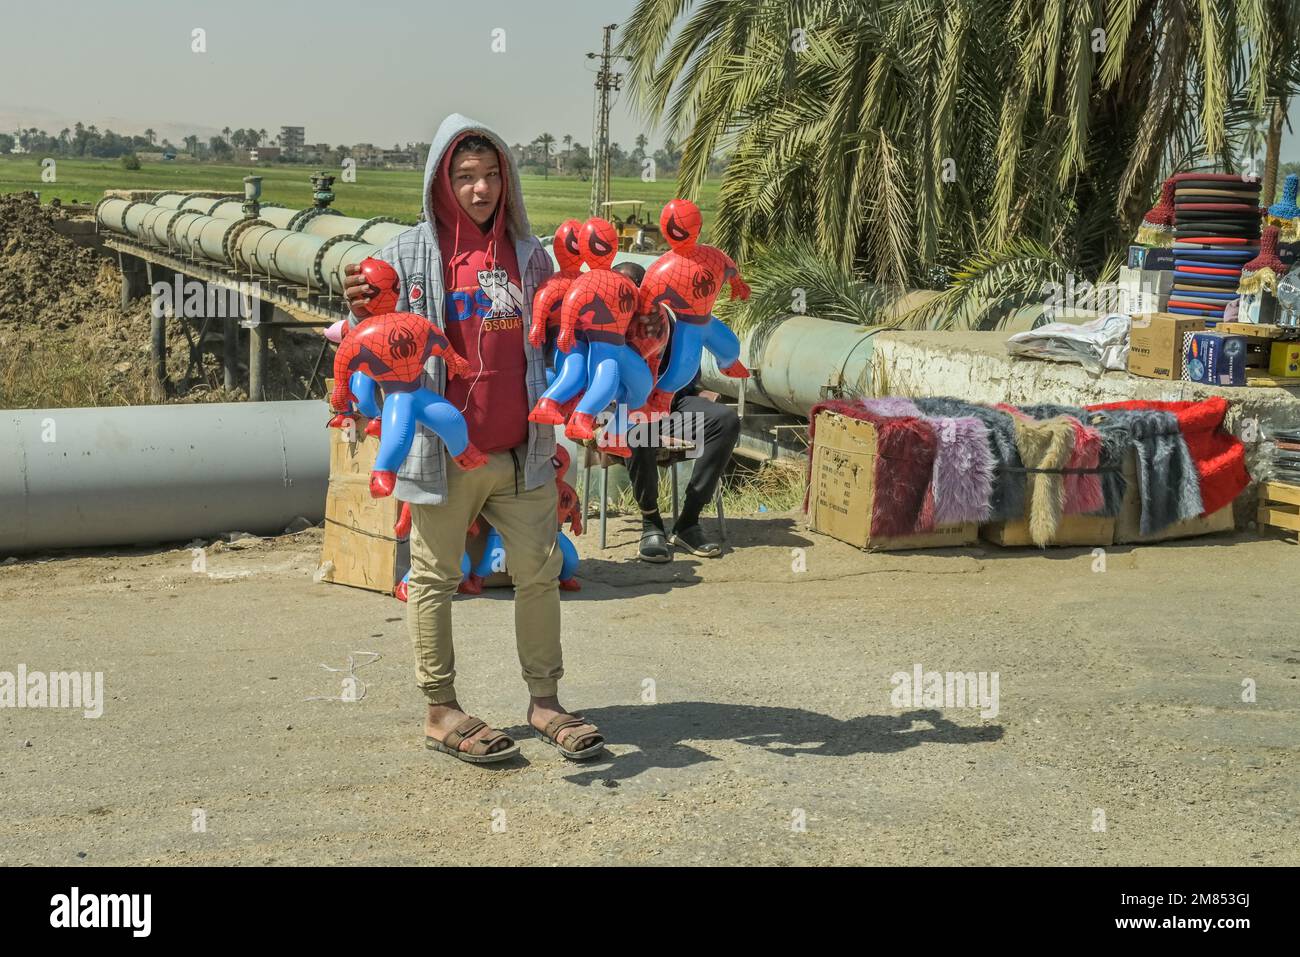 Straßenszene, Kinderarbeit, junger Mann verkauft Spiderman Figuren, Strasse 75 zwischen Luxor und Qina, Ägypten Foto Stock